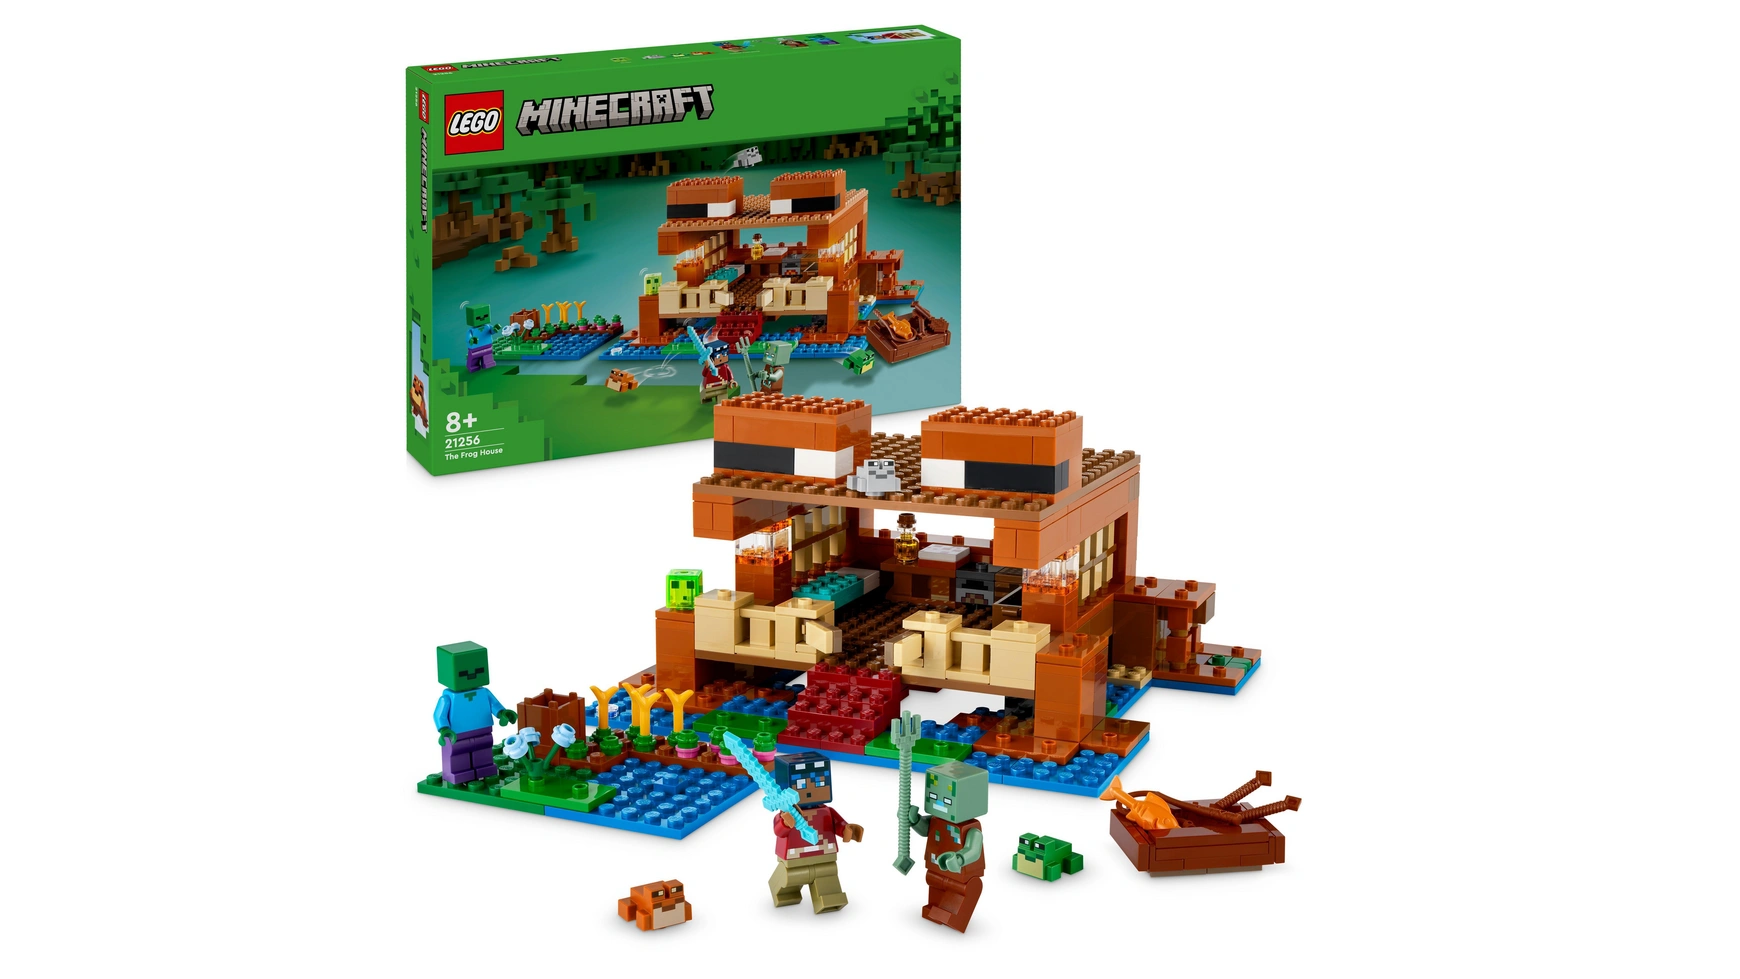 Lego Minecraft Набор Дом лягушки, игрушечный домик с фигурками lego minecraft подземелье пещера набор игрушек с фигурками скелетов